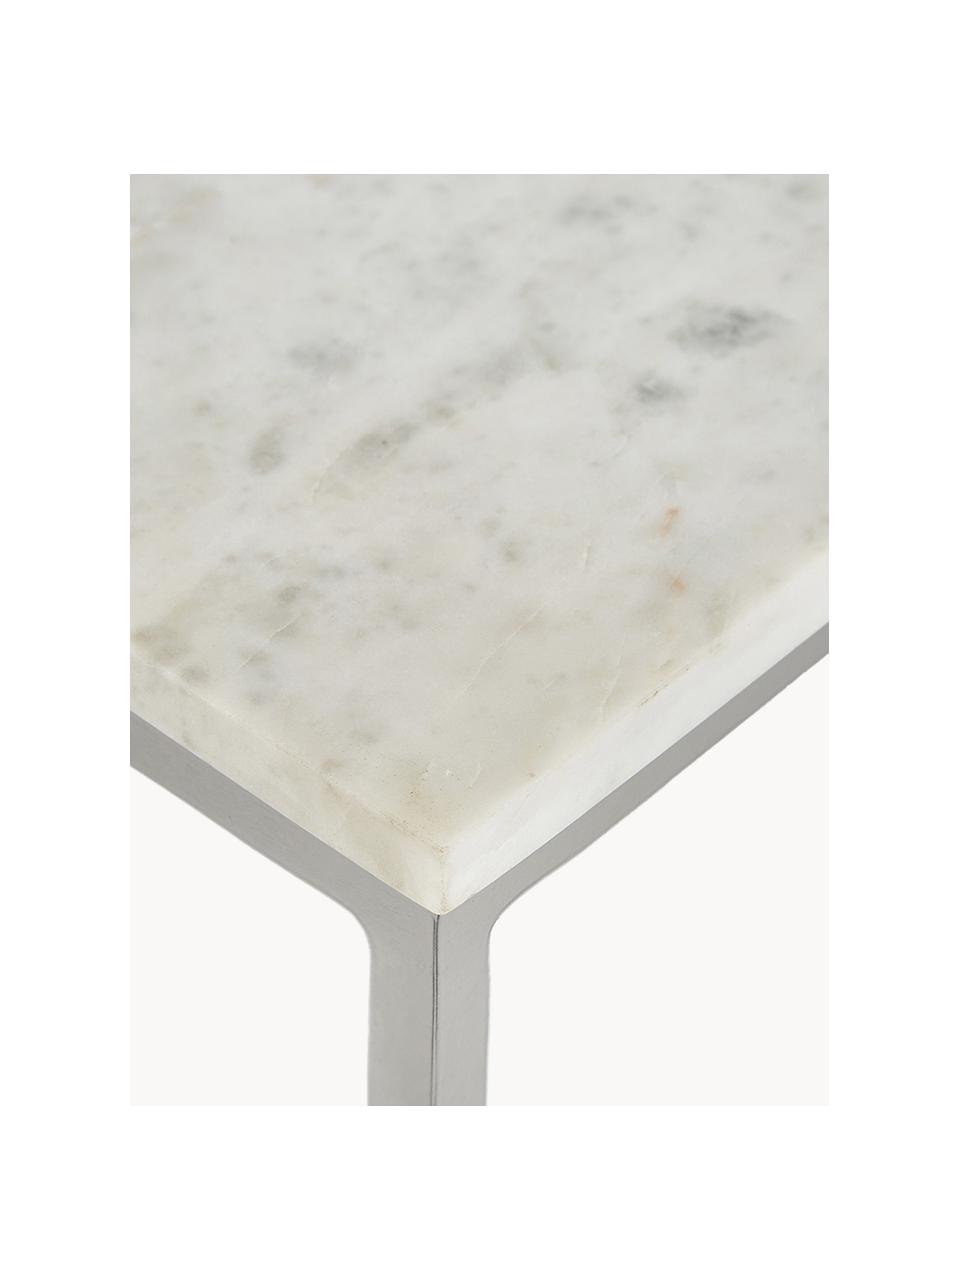 Grosser Marmor-Couchtisch Alys, Tischplatte: Marmor, Gestell: Metall, pulverbeschichtet, Weiss, marmoriert, Silberfarben, B 120 x T 75 cm